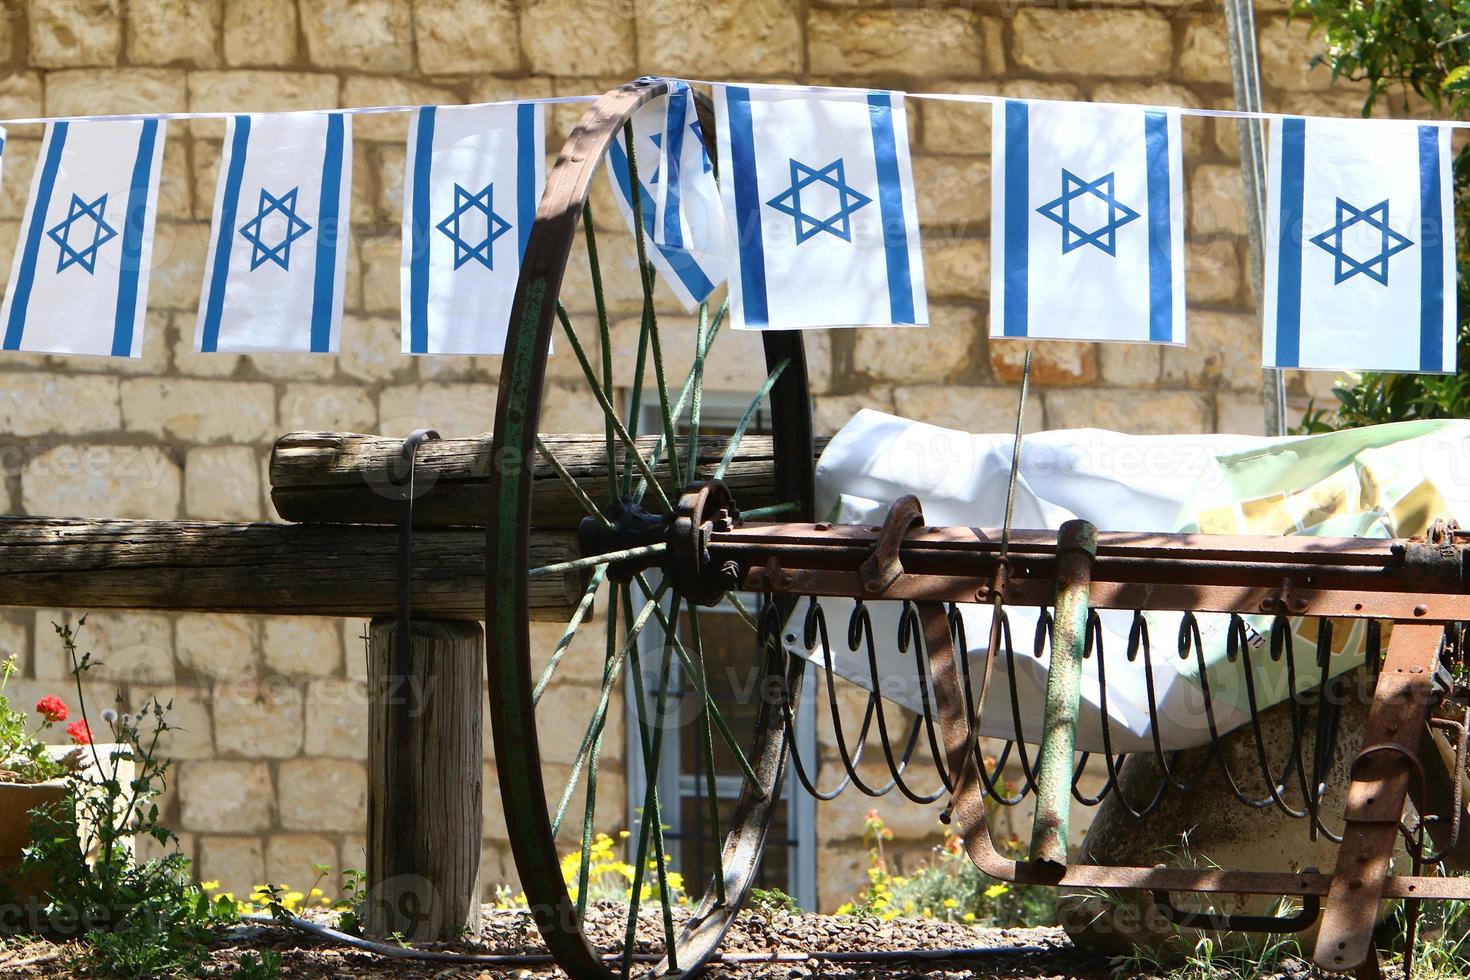 le drapeau bleu et blanc d'israël avec l'étoile à six branches de david. photo